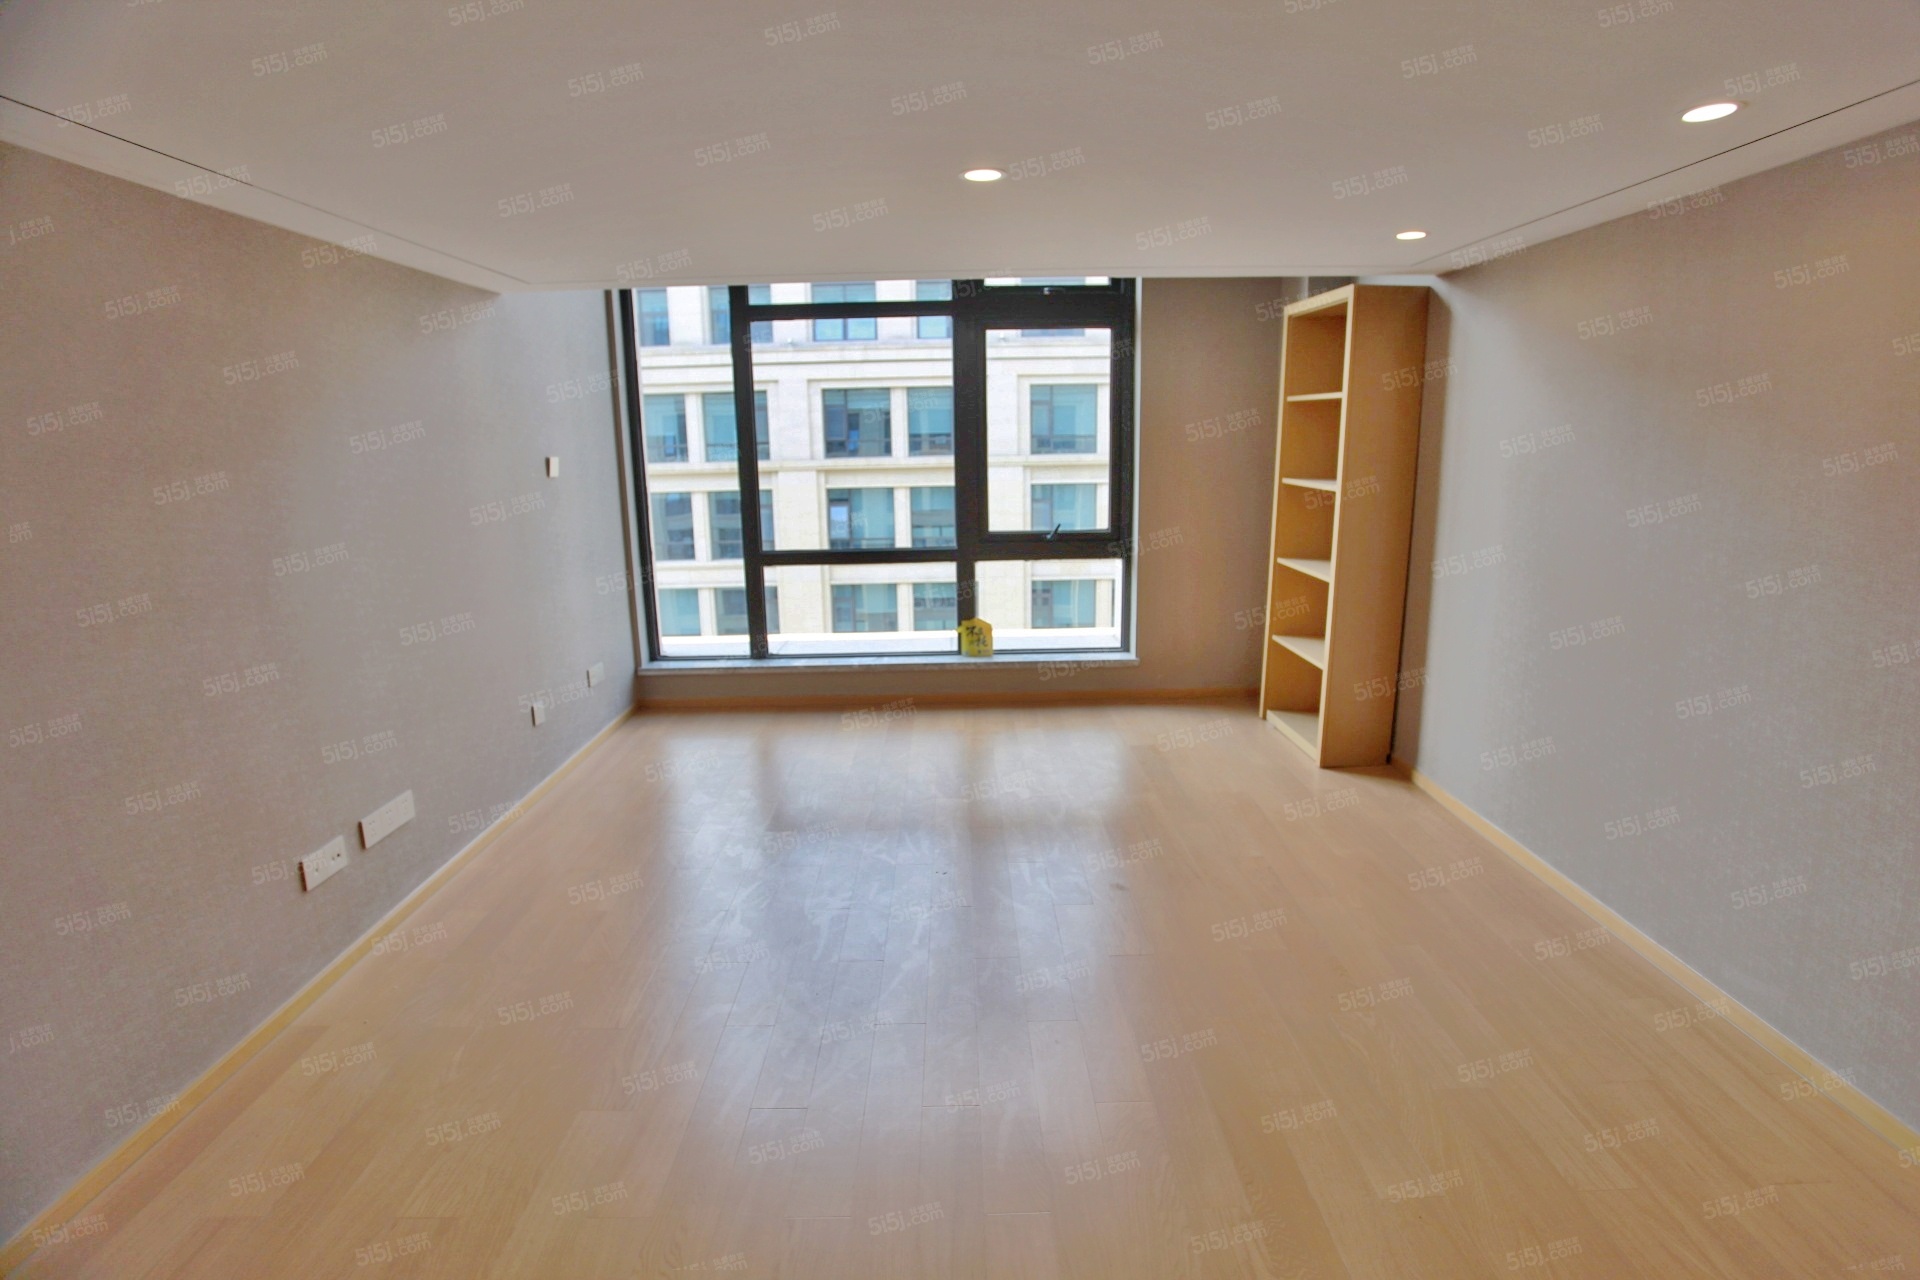 绿城西溪世纪广场公寓 双层精装Loft公寓 两室两厅全新